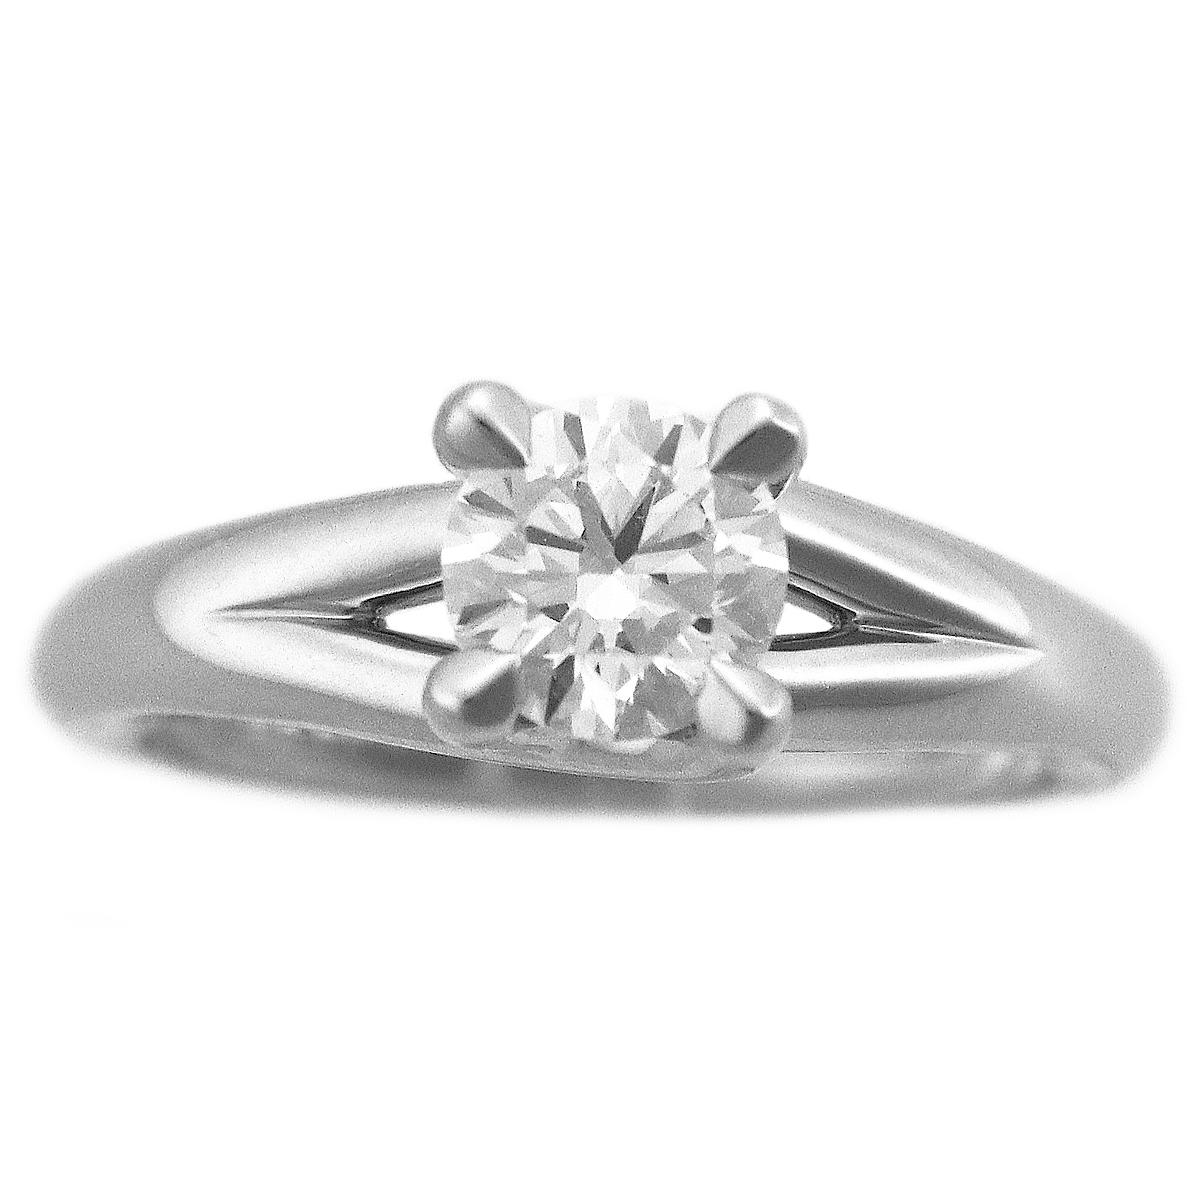 Marke: CHAUMET
Name:Liens Ring
Material :1P Diamant (D0.70ct E-VS1-VG), PT950 Platin
Dazu: Chaumet-Box, Etui, GIA-Zertifikat (Juni 2008)
Ringgröße:Britisch & Australisch:H 1/2  /   USA und Kanada:4  /  Französisch & Russisch:47 /  Deutsch:15 / 